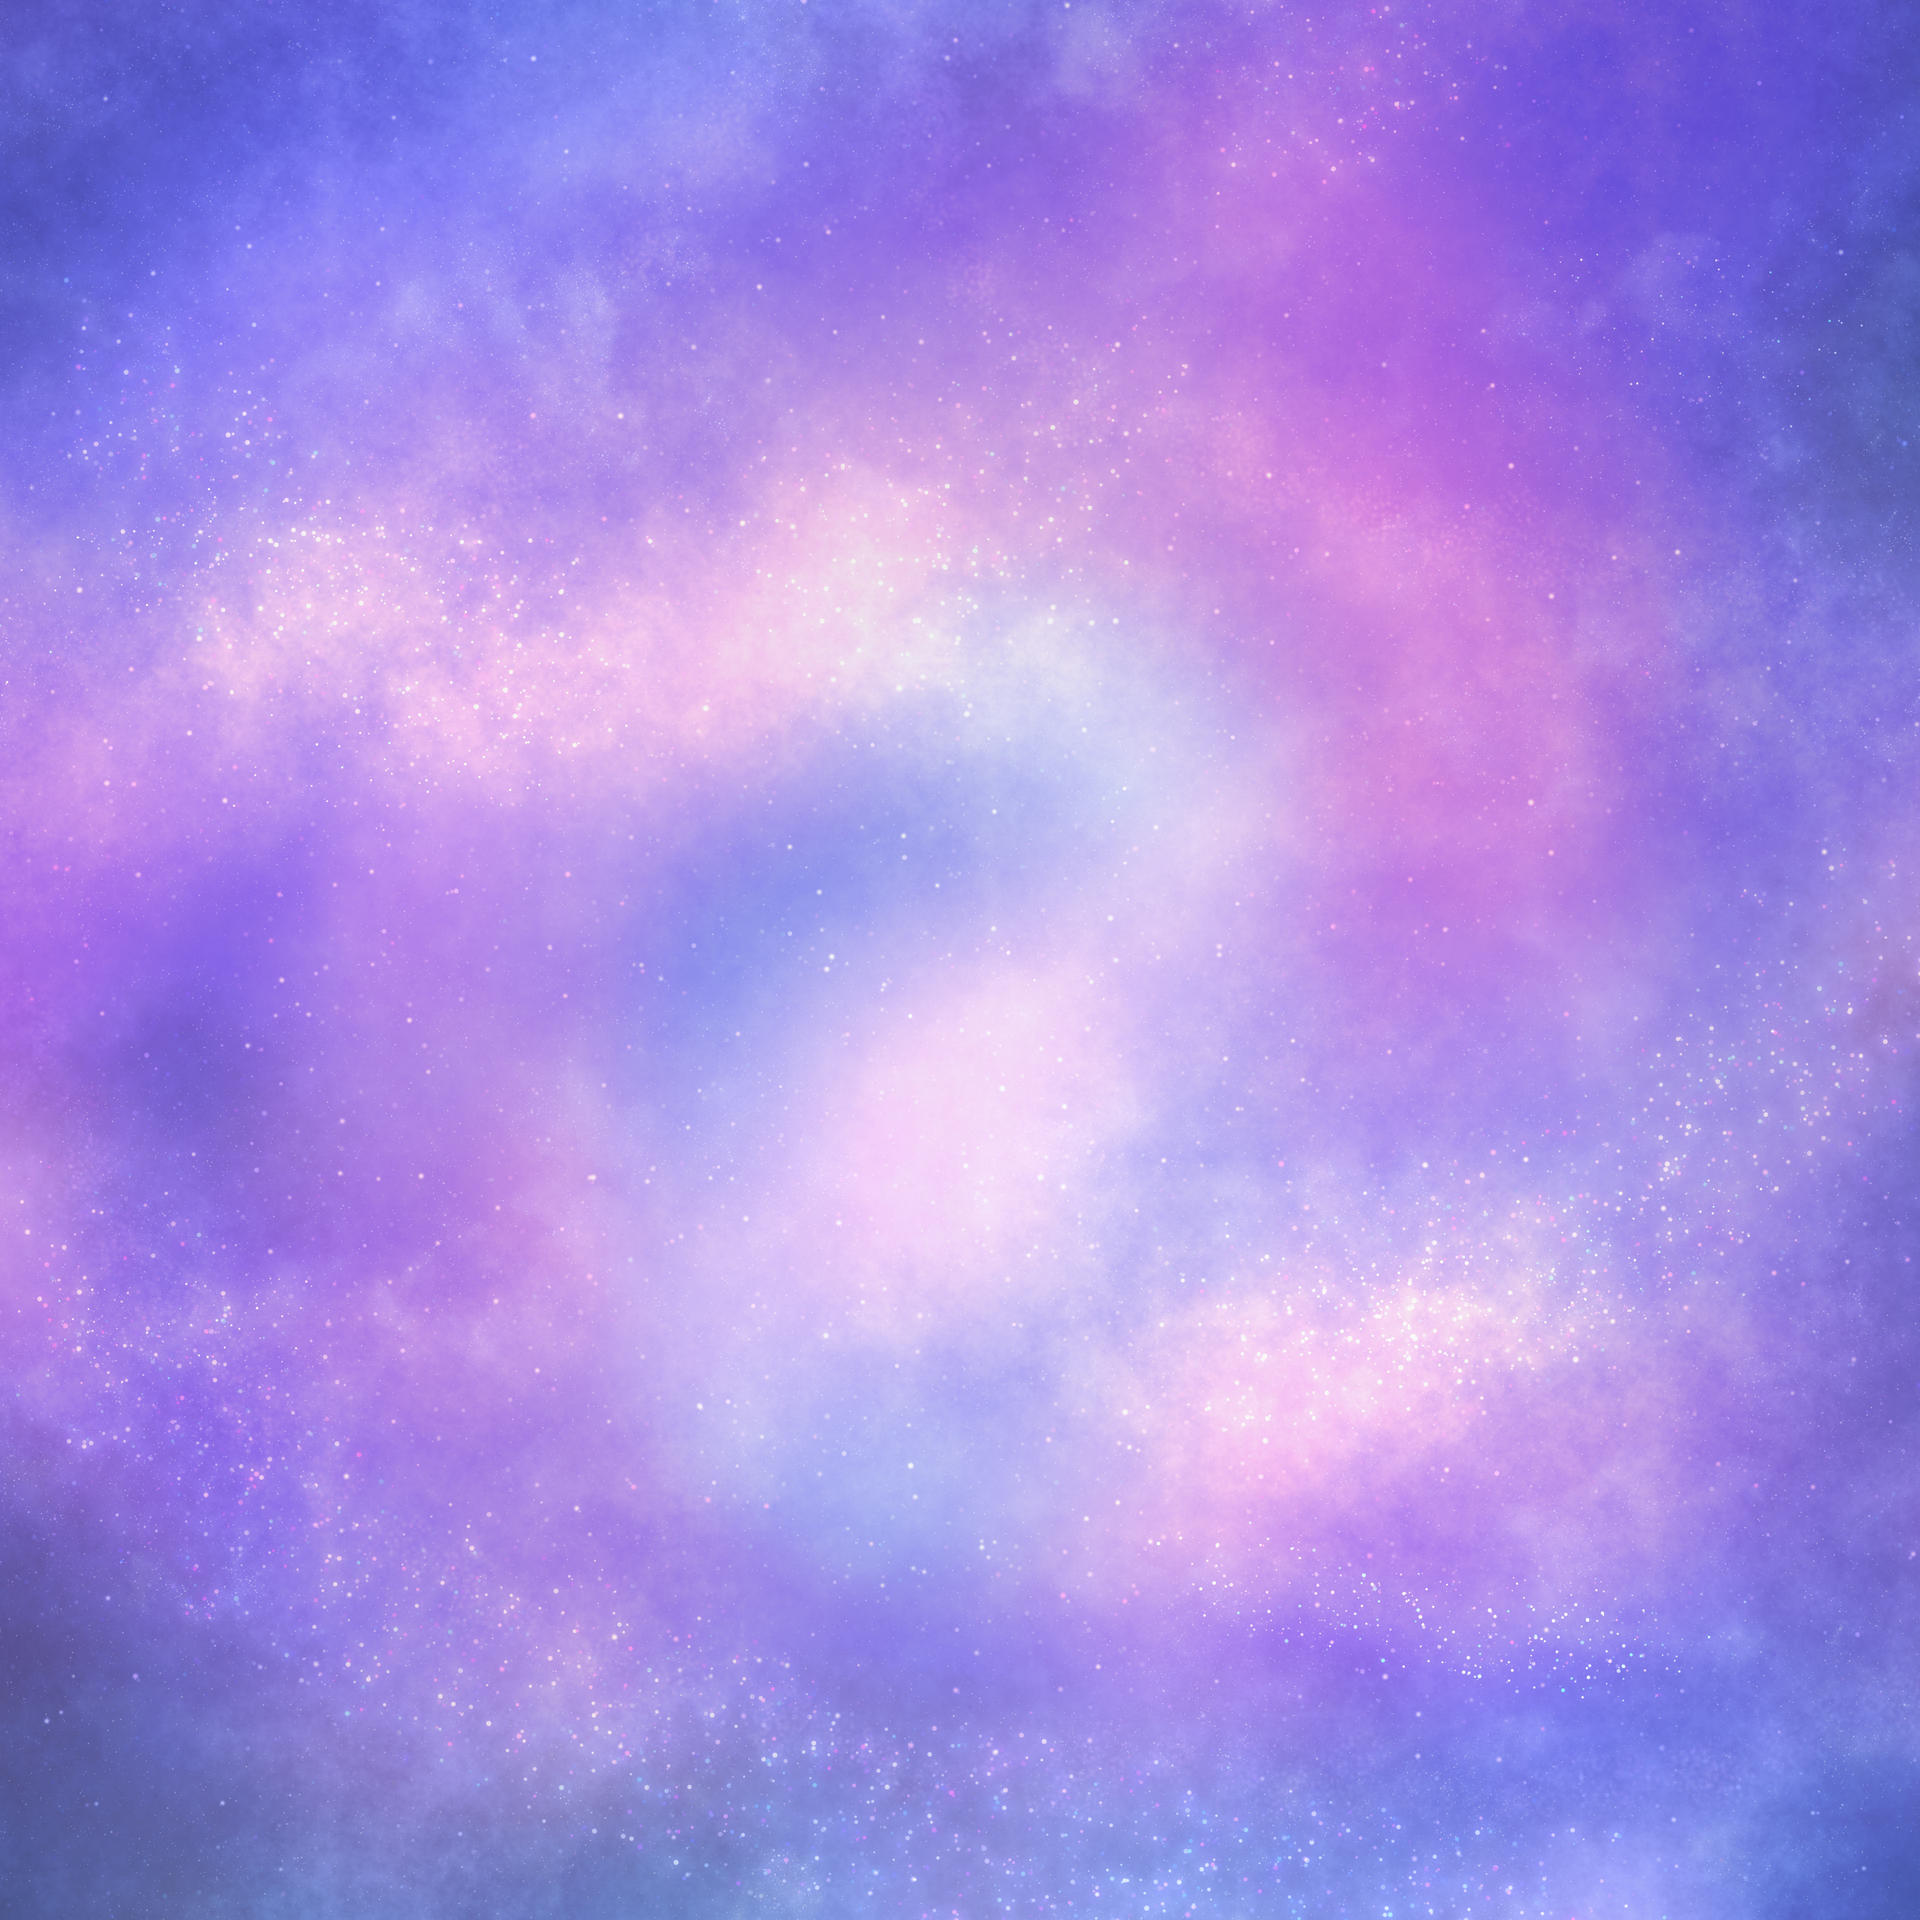 Mặt trời tím (Purple galaxy): Hình ảnh Mặt trời tím đầy ngẫu hứng và phong cách có thể khiến bạn thực sự say mê. Lạ mắt và cuốn hút, chiêm ngưỡng một thiên hà tuyệt đẹp, nơi bạn sẽ thấy mình bị cuốn hút vào sự tồn tại đầy bí ẩn này.